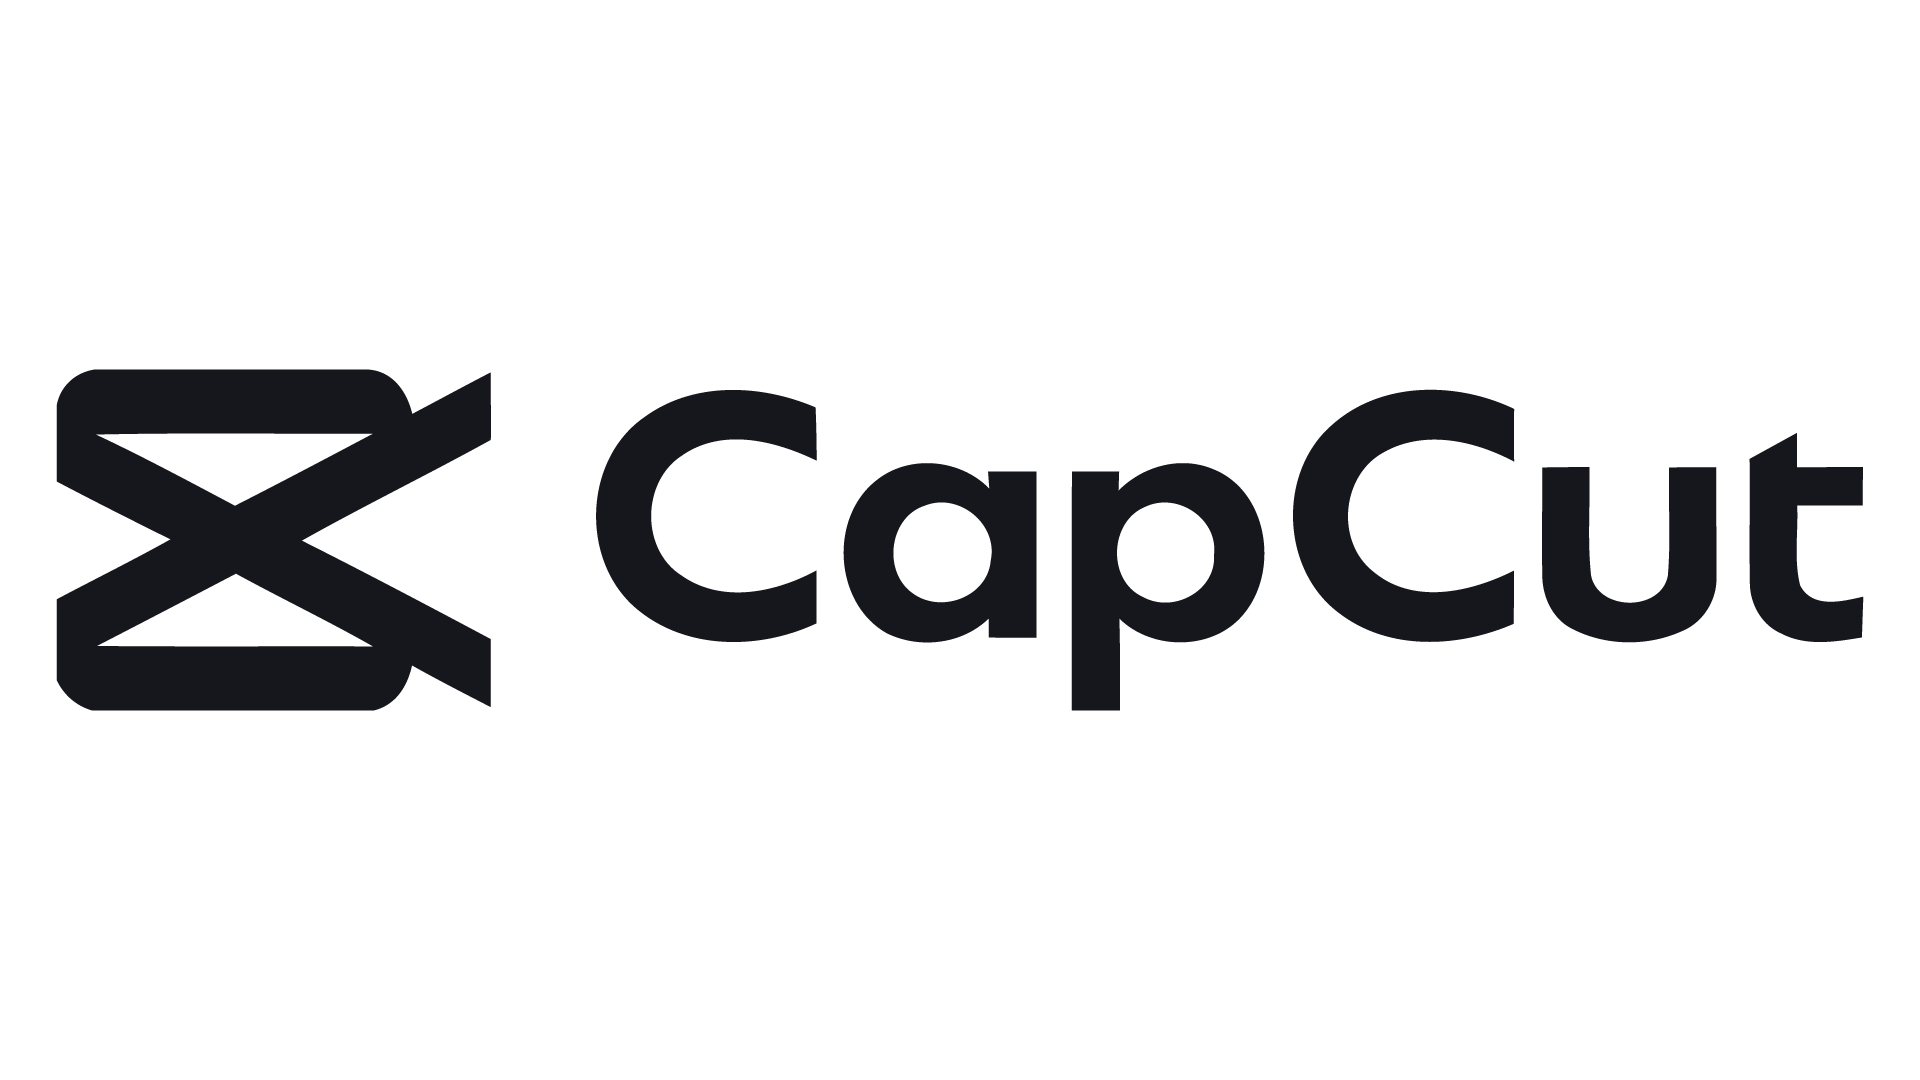 CAPCUT логотип. Приложение CAPCUT. Значок CAPCUT PNG. Black CAPCUT logo. Capcut tools